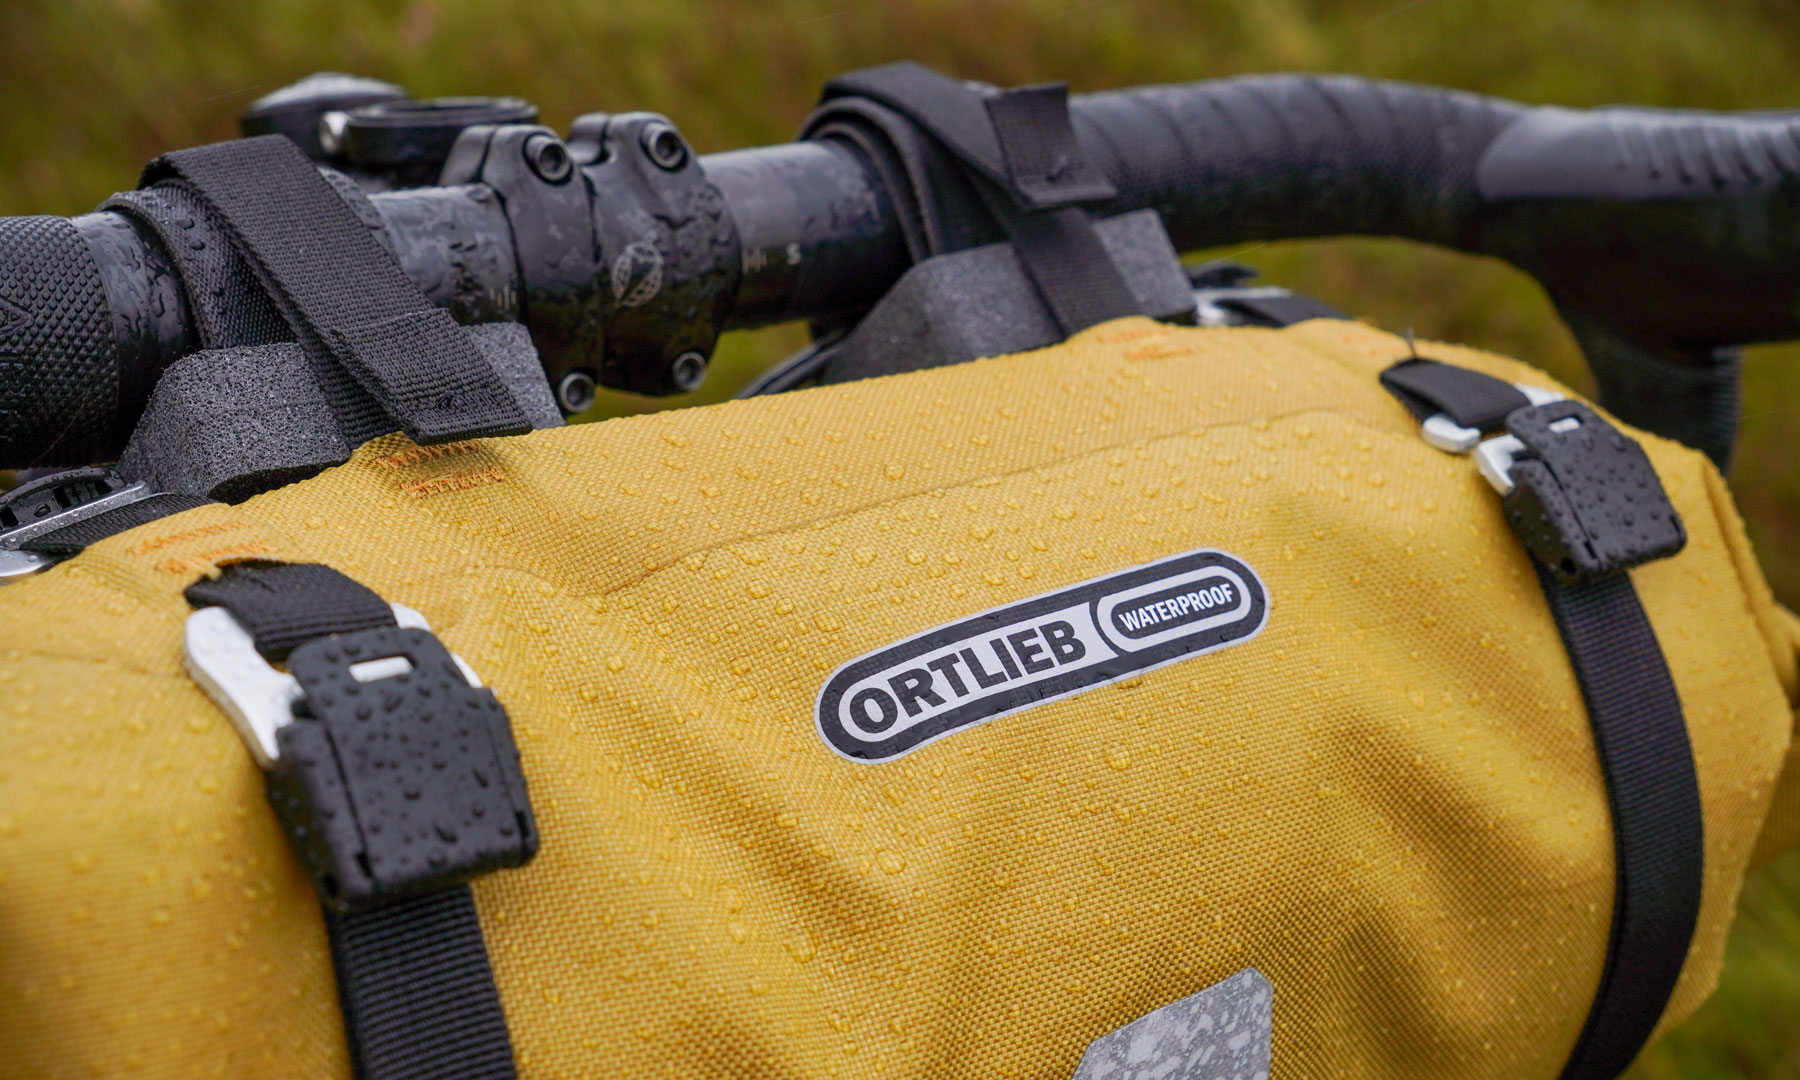 2023 Ortlieb Mustard limited edition Bikepacking Bags, waterproof